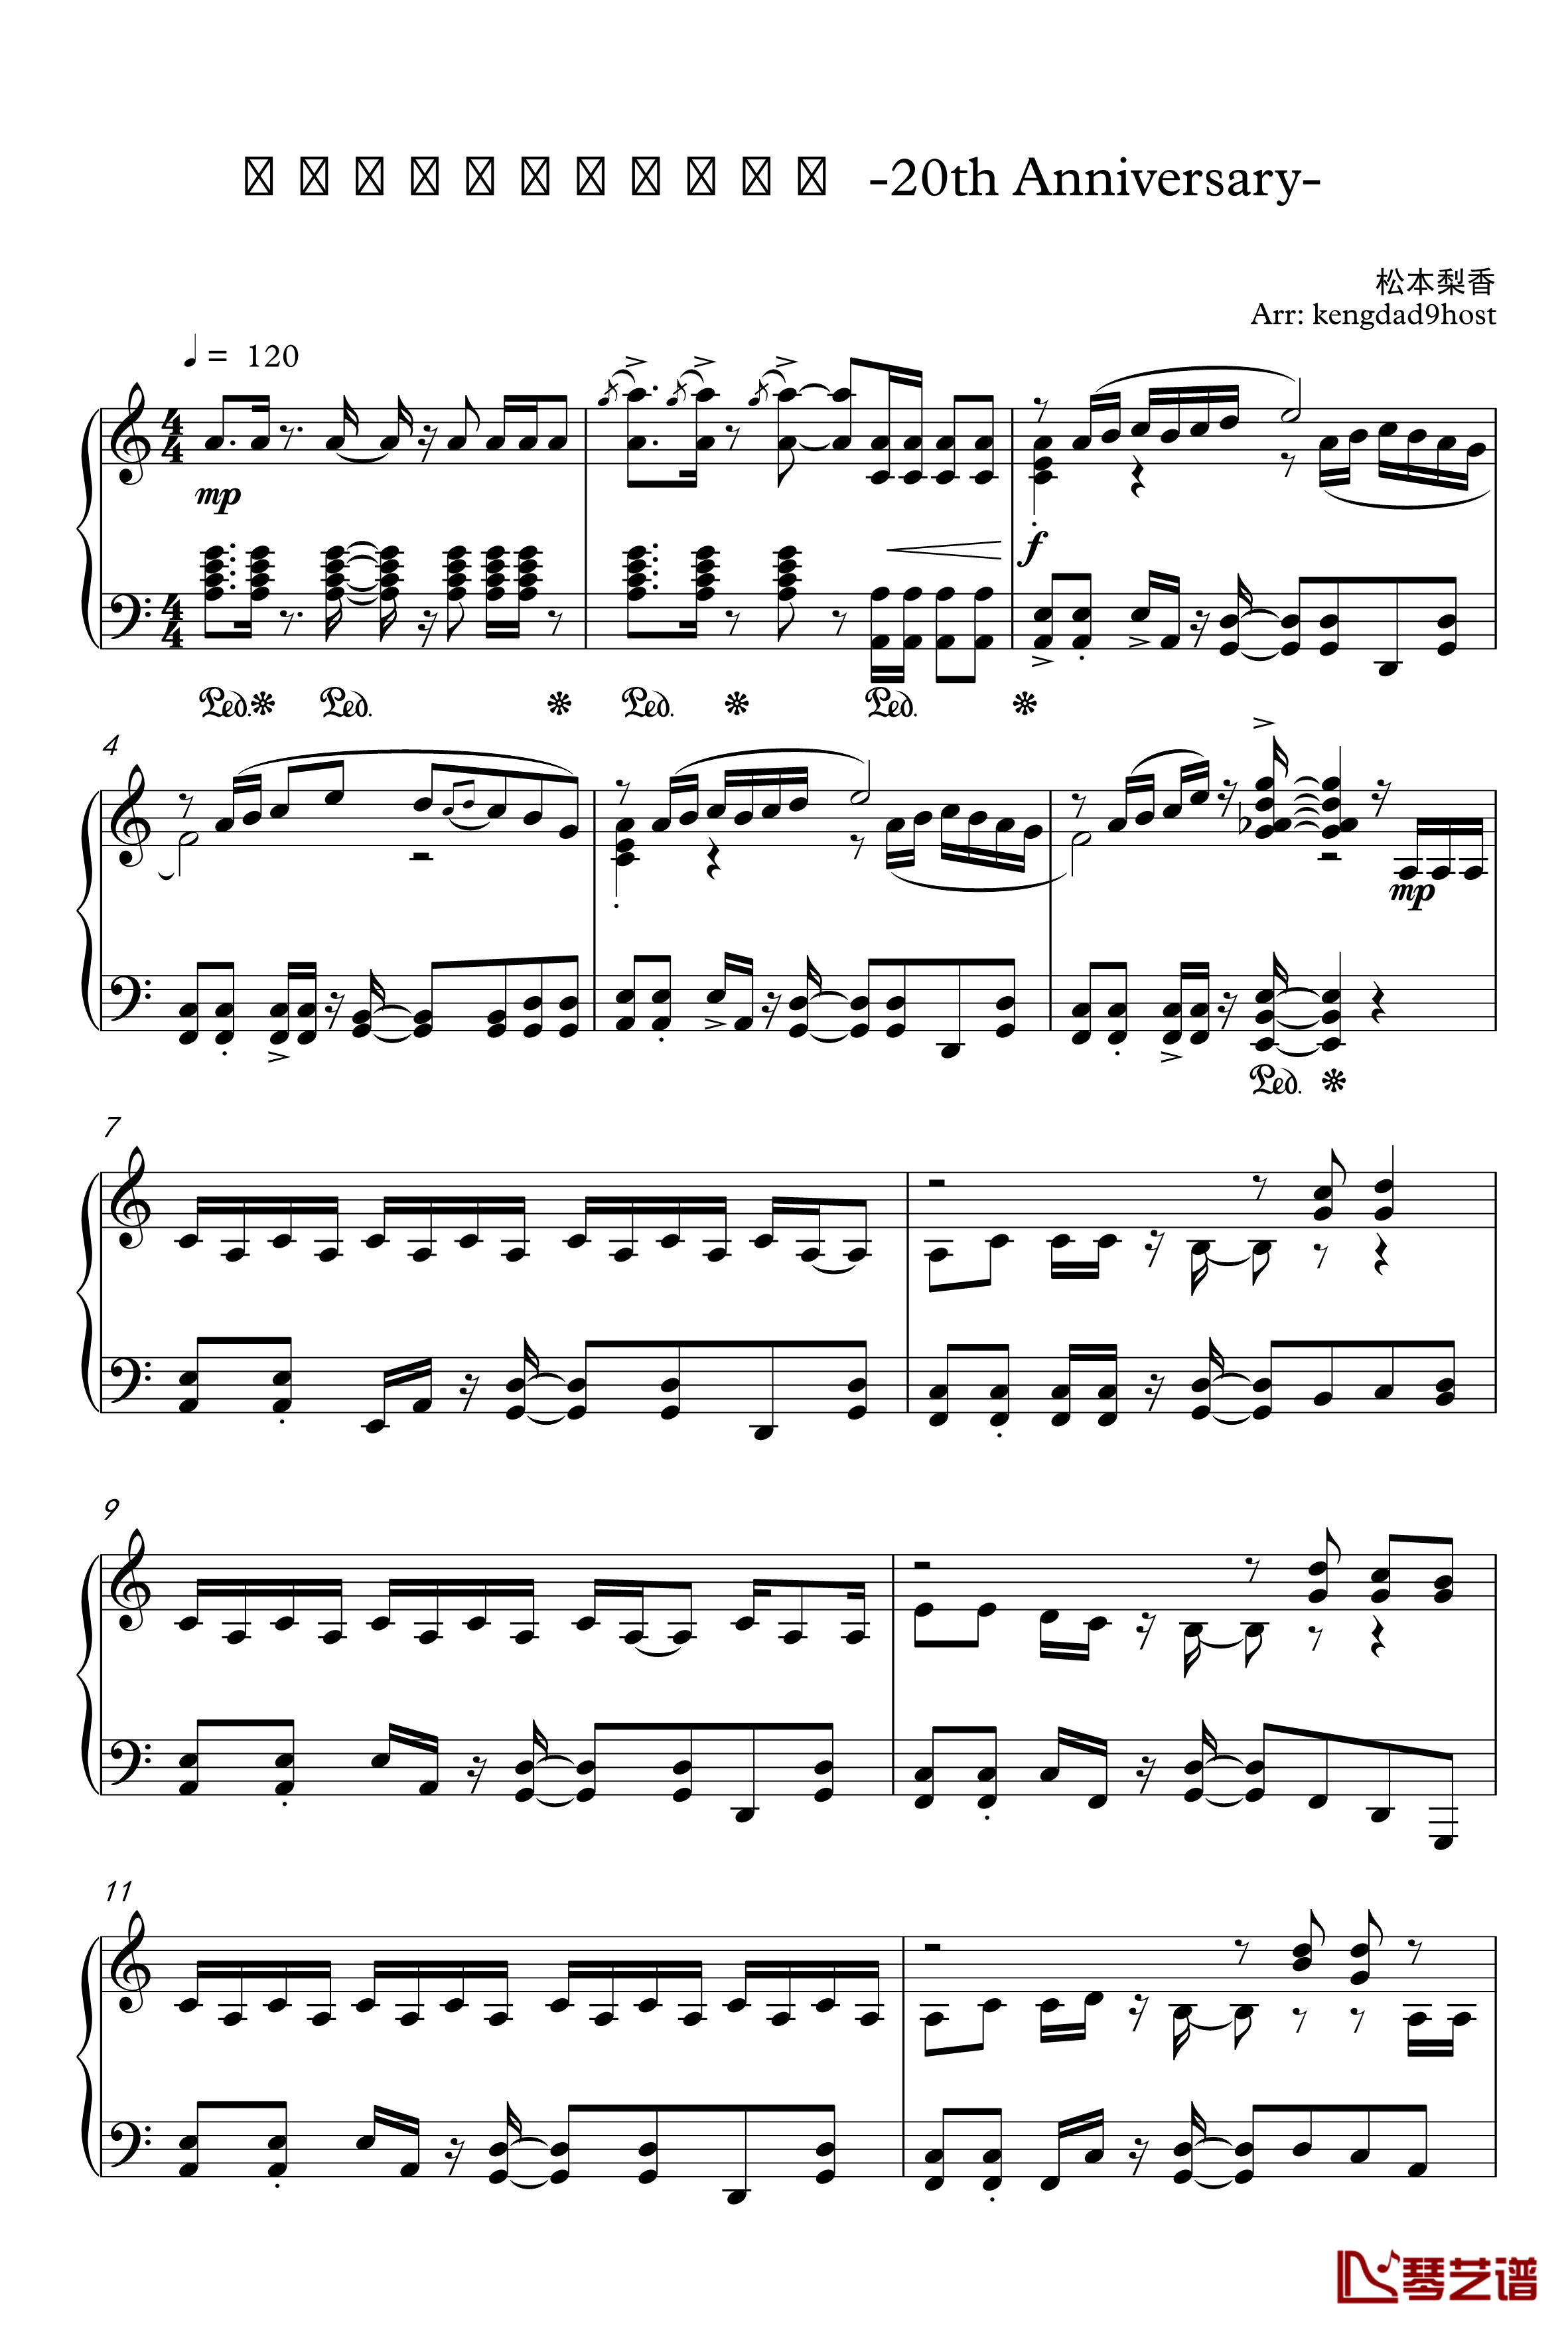 目标是神奇宝贝大师钢琴谱-20周年纪念版1